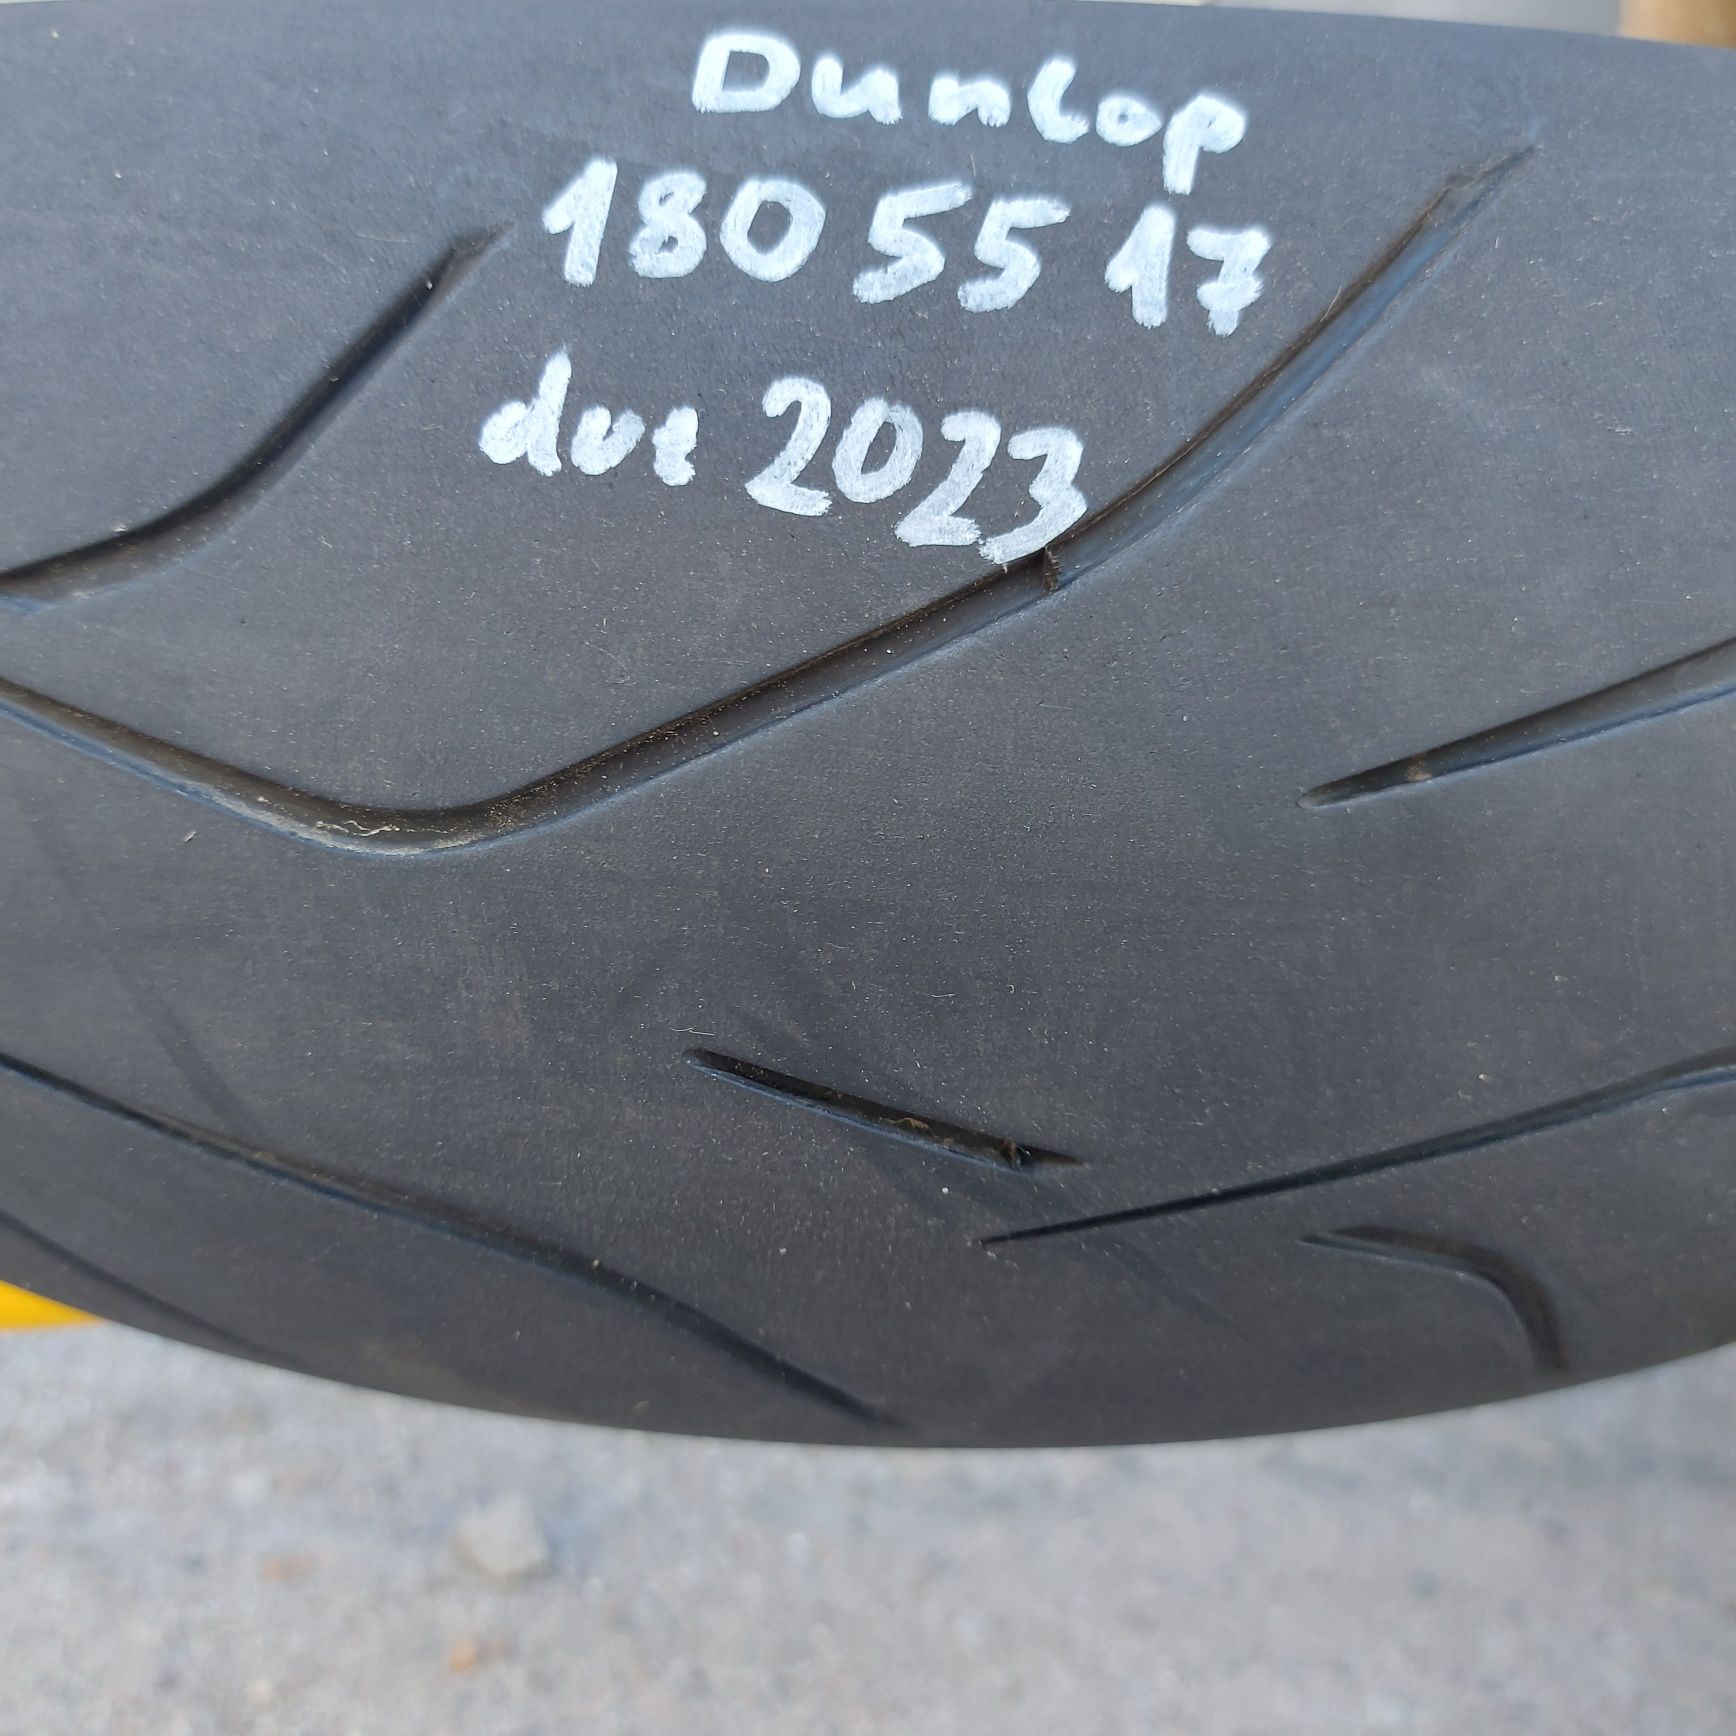 180/55/17"Dunlop. Dot2023